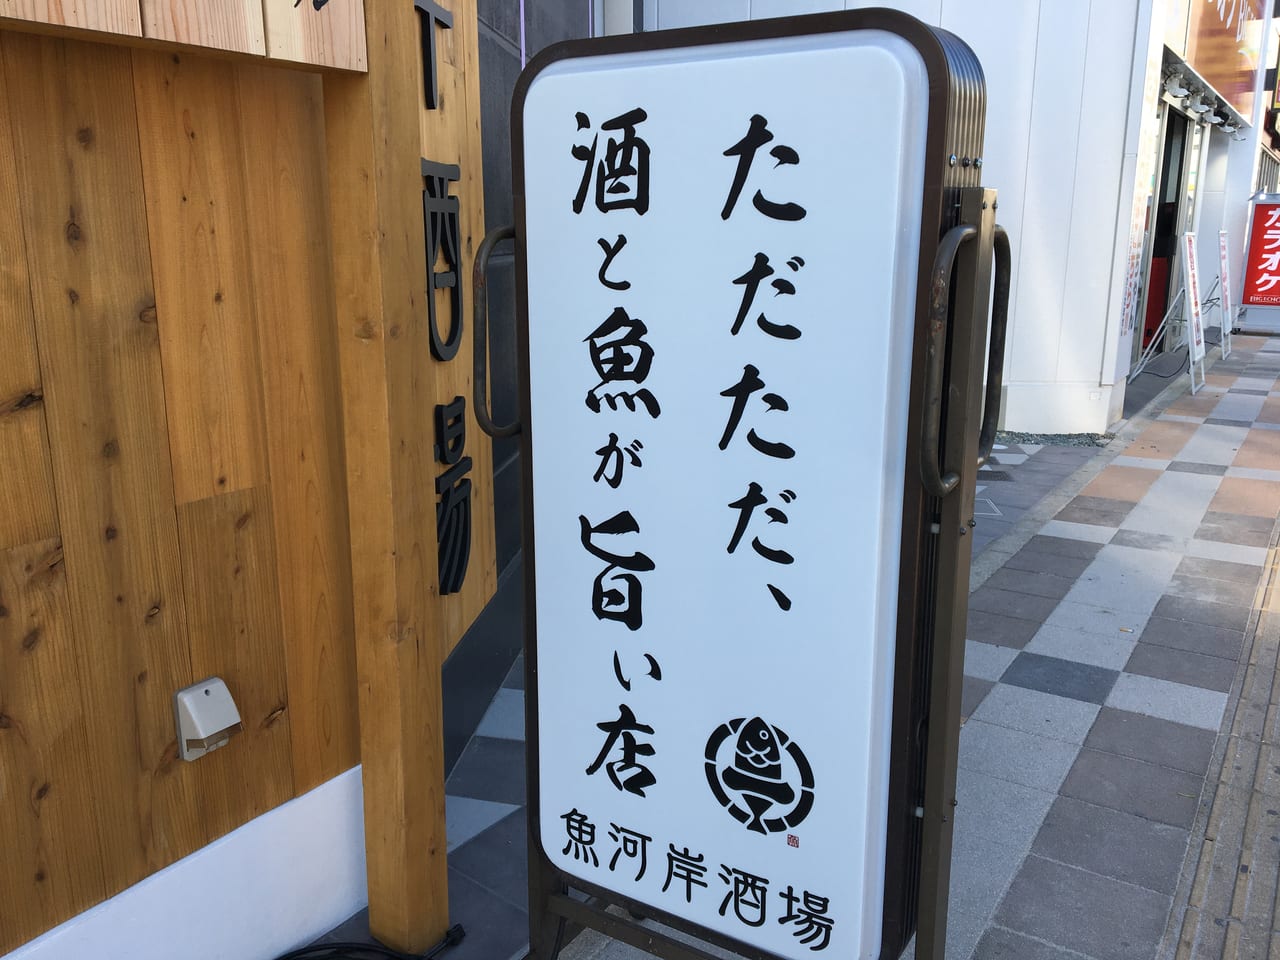 魚河岸酒場FUKU浜金 大曽根店 